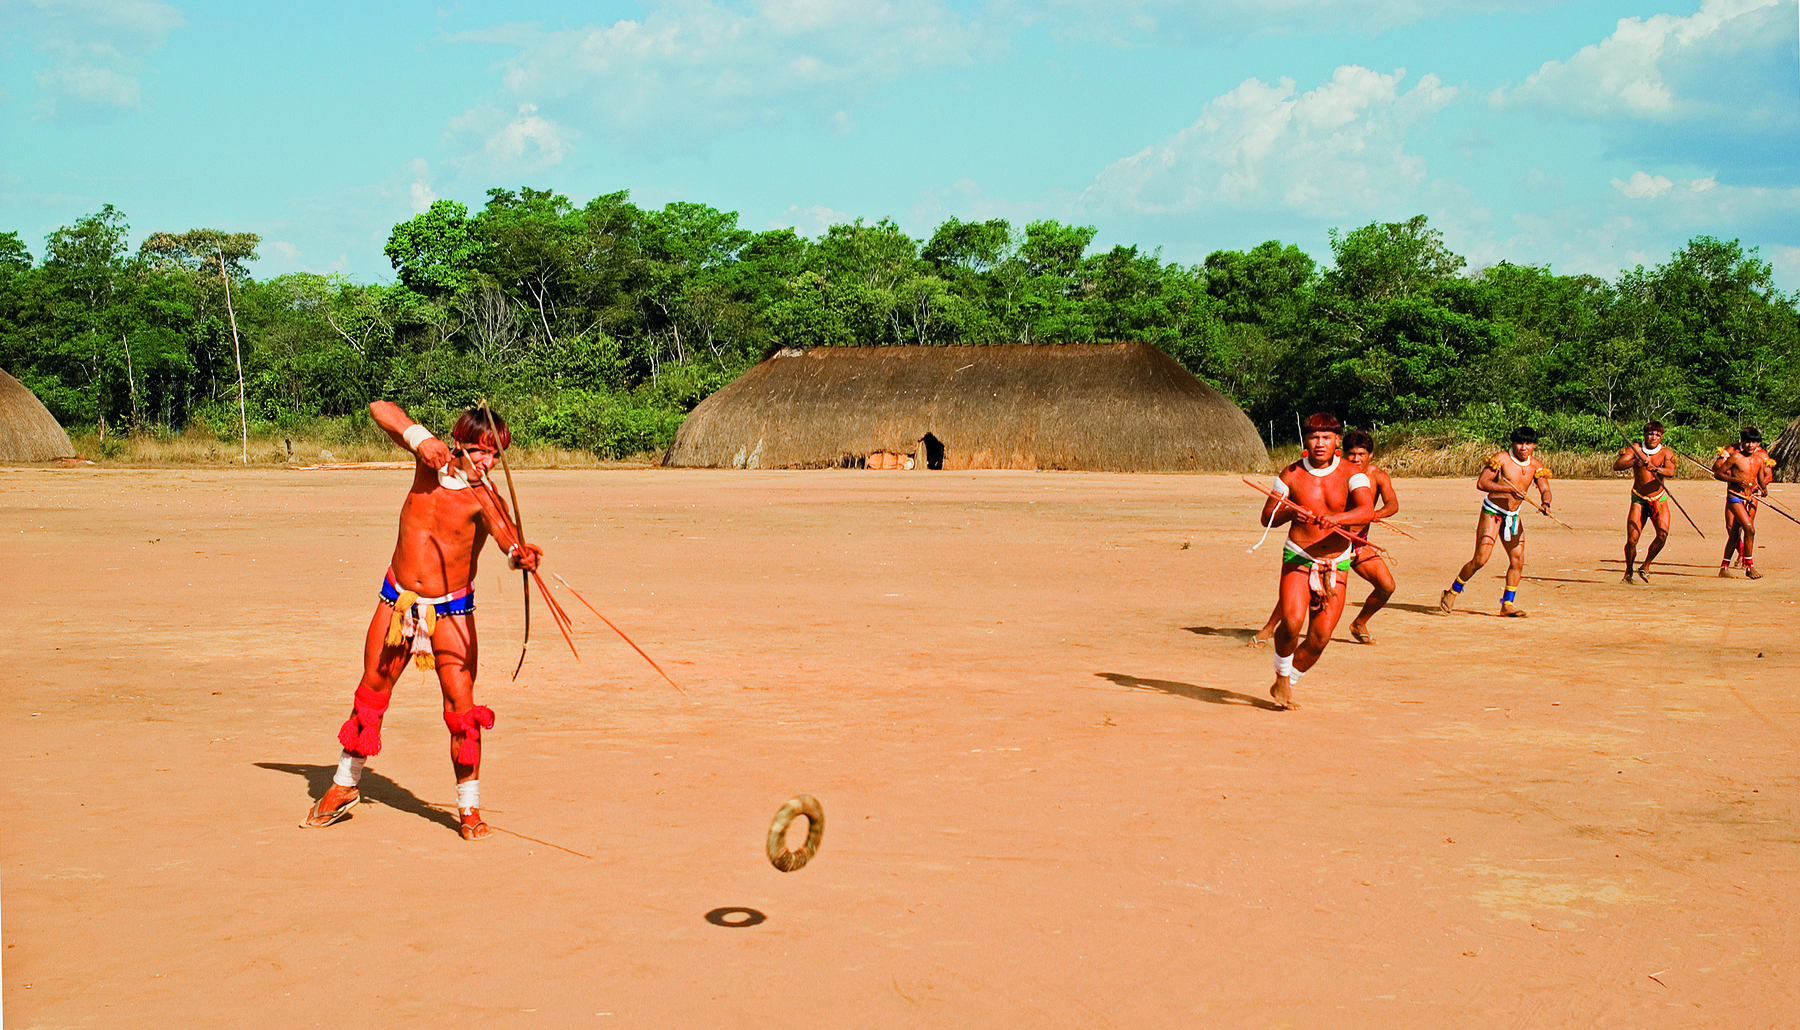 Fotografia. Homem indígena está em pé e segura um arco e flecha apontado na direção de um objeto circular que paira acima do chão de terra. Ao fundo, há uma oca, vegetação e diversos indígenas.